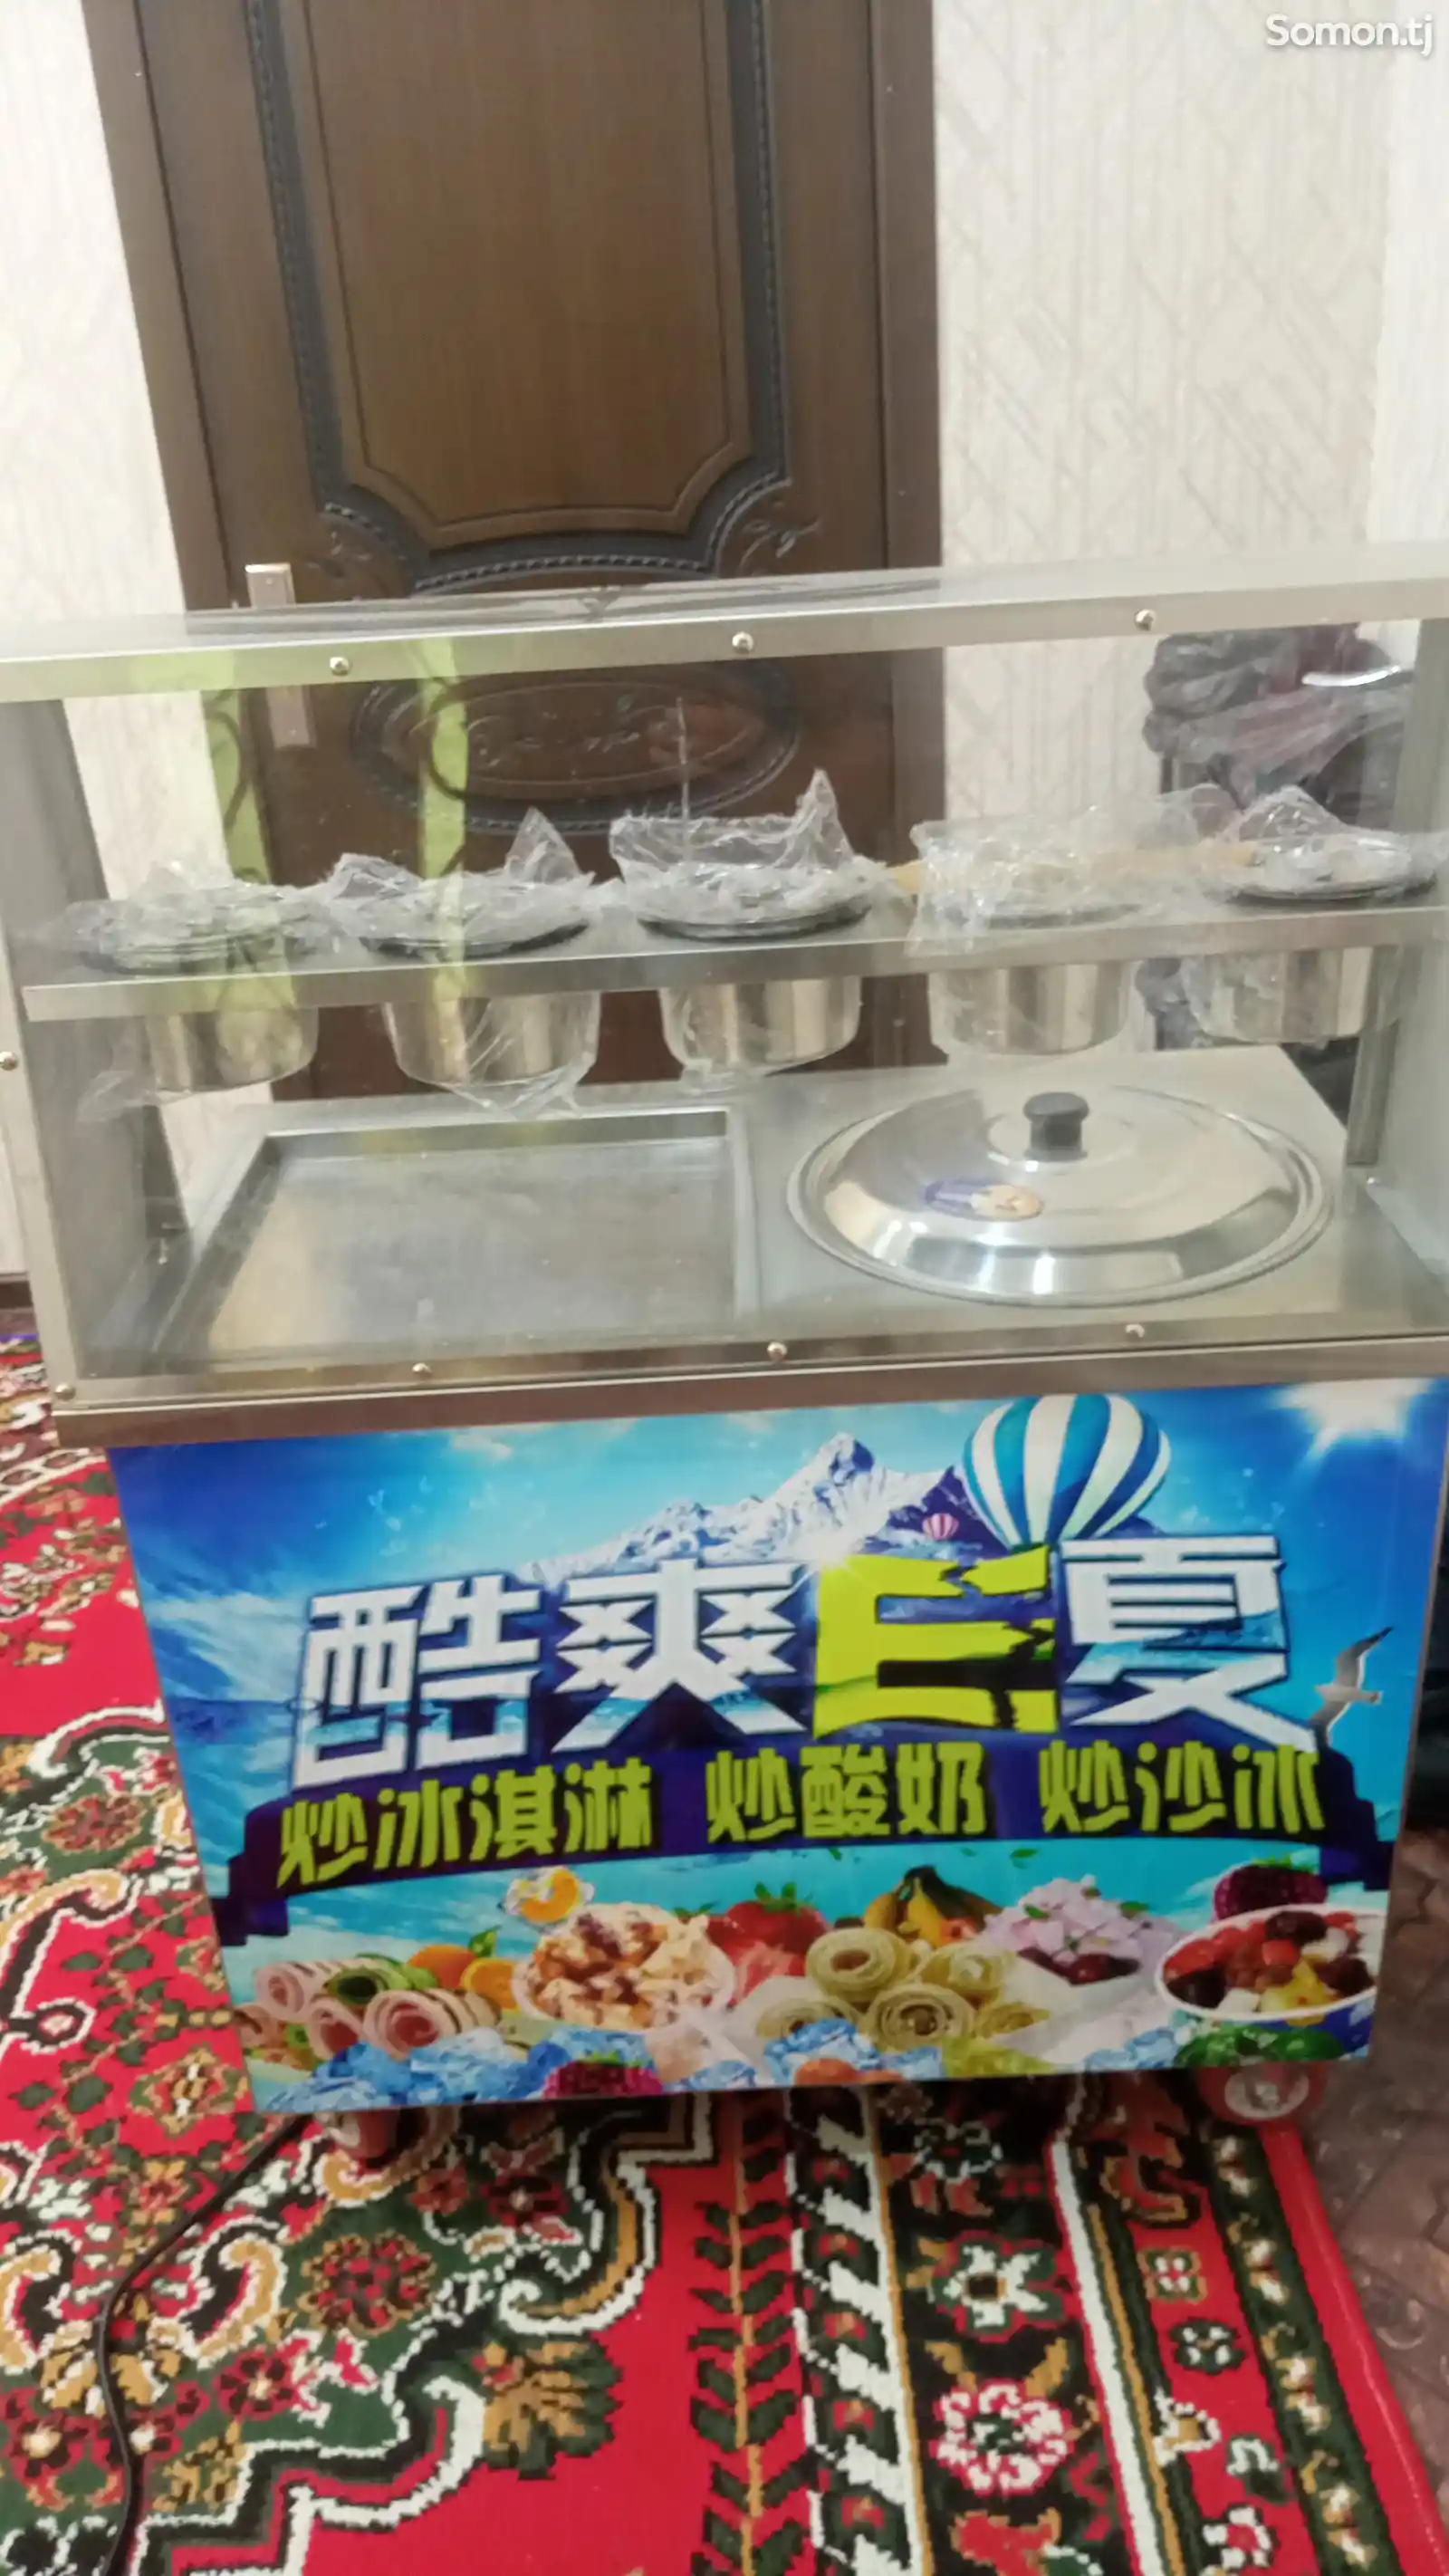 Аппарат для мороженого-2